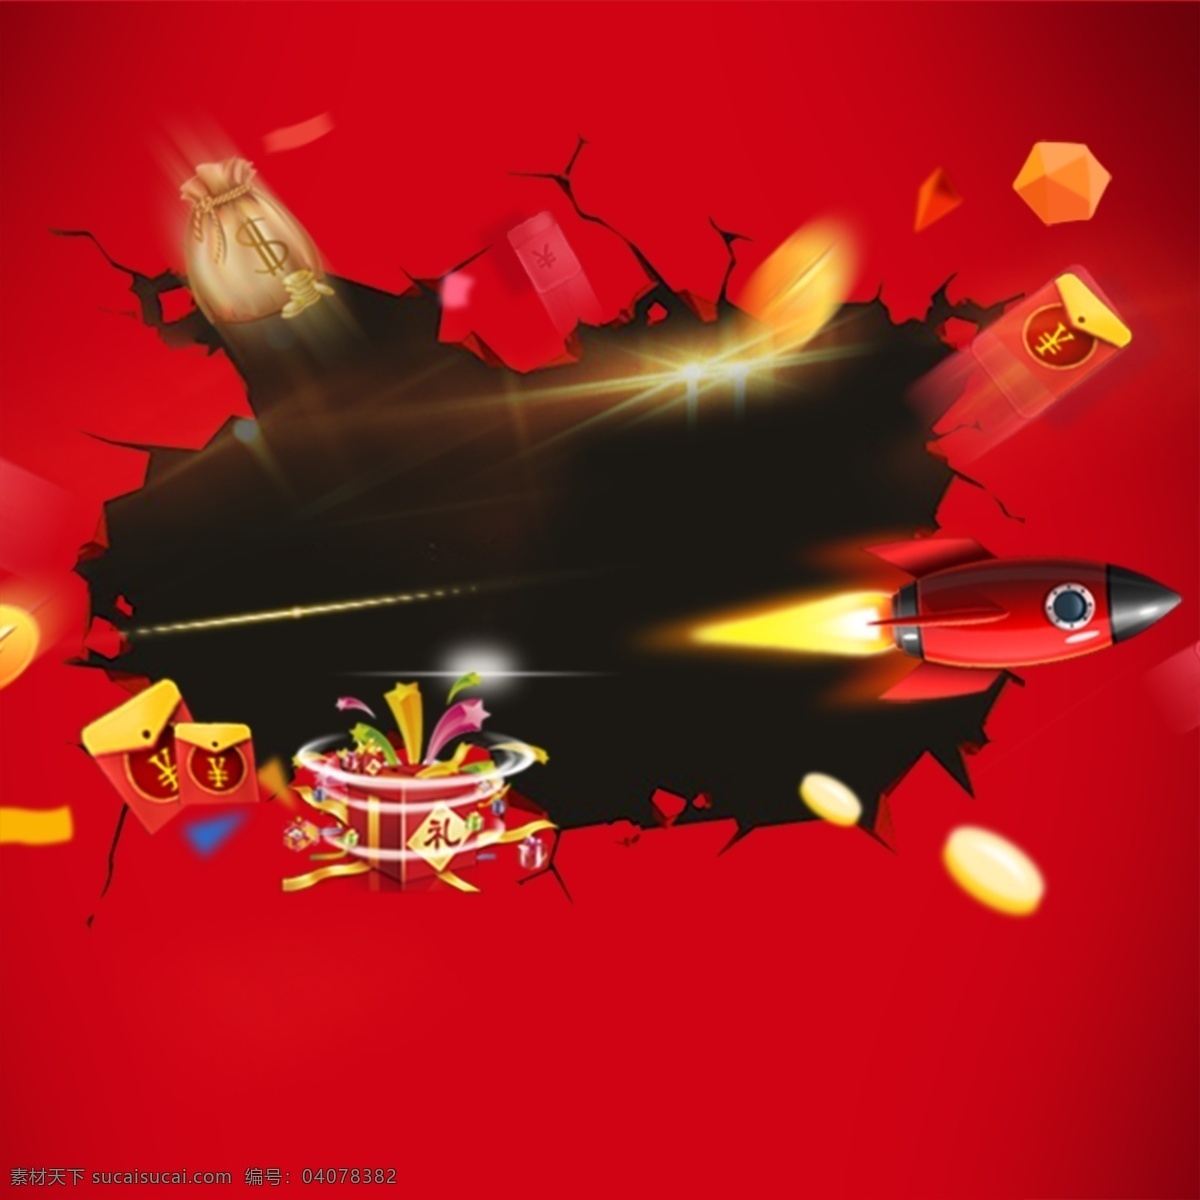 淘宝 促销 背景 主 图 红色 火箭 红包 金币 裂痕 创意背景 活动背景